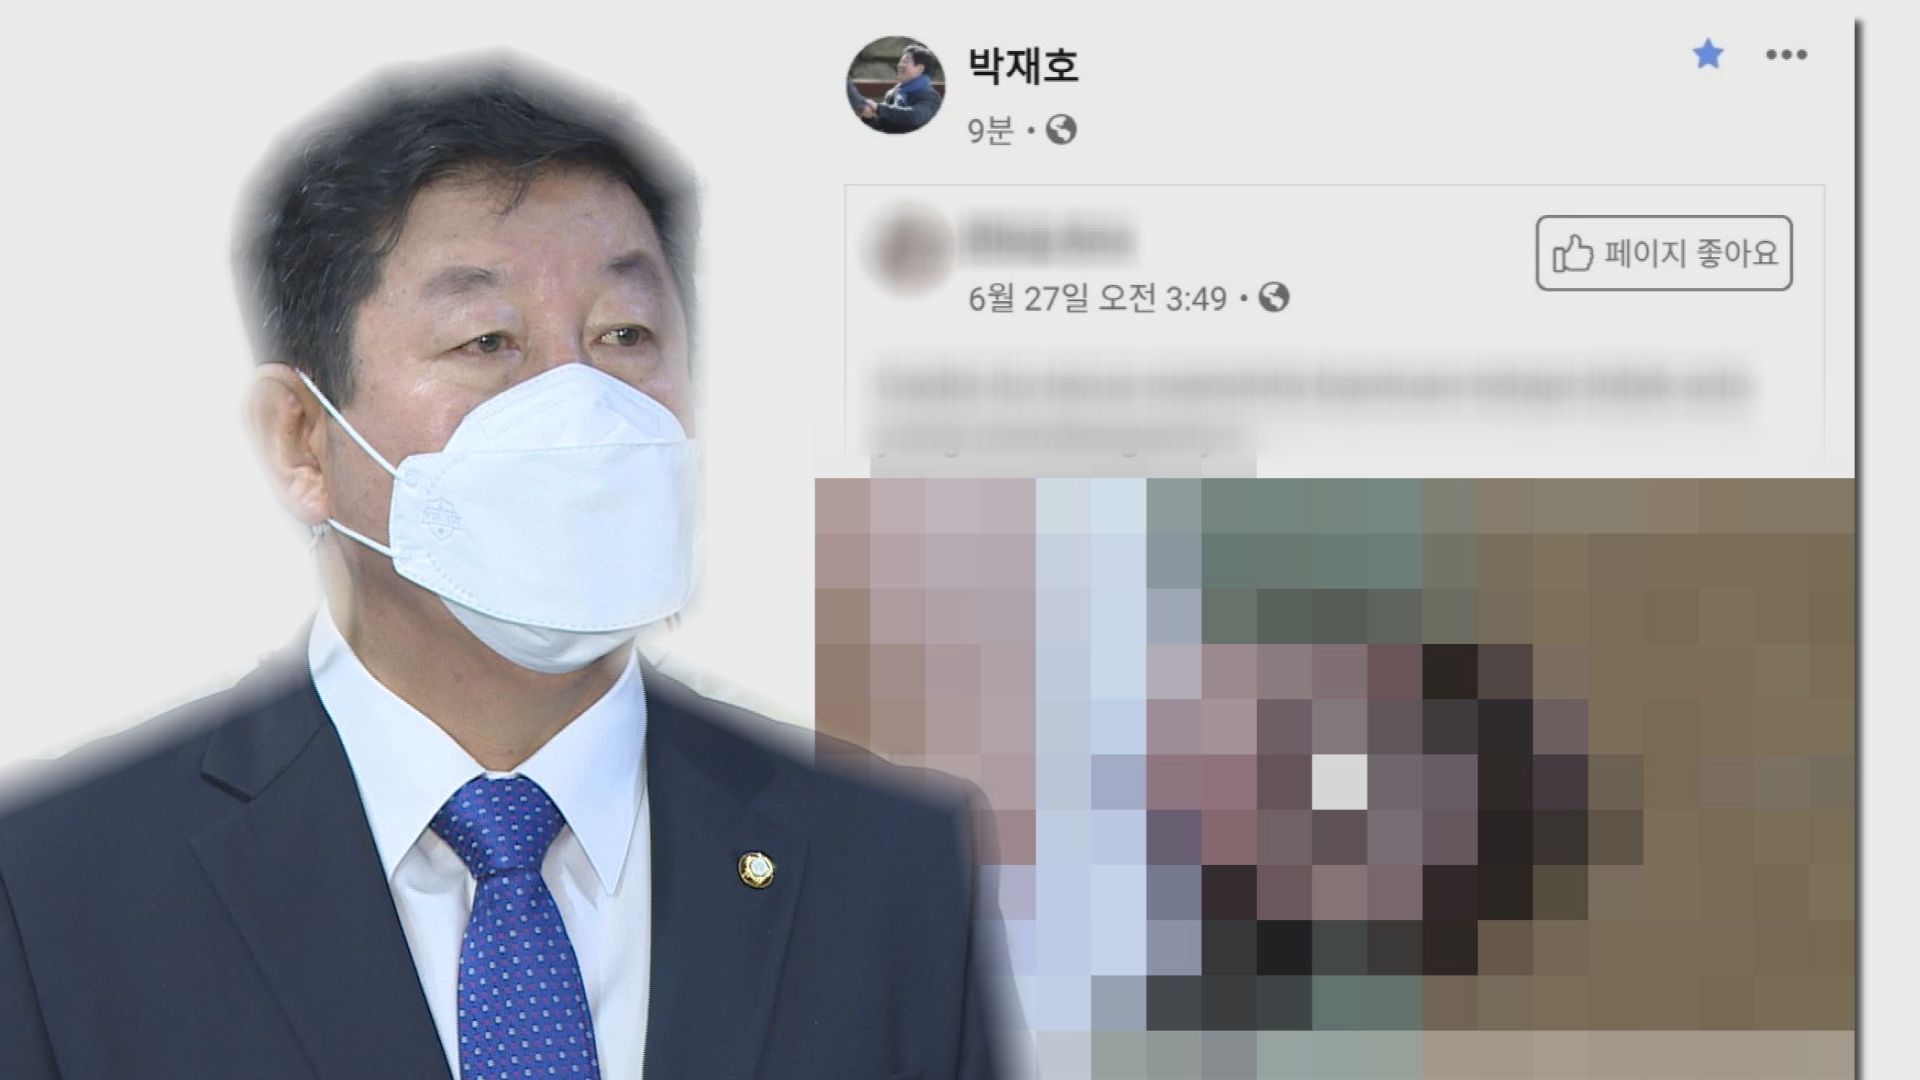 박재호 의원 페북 성인물 사건 수사 중지